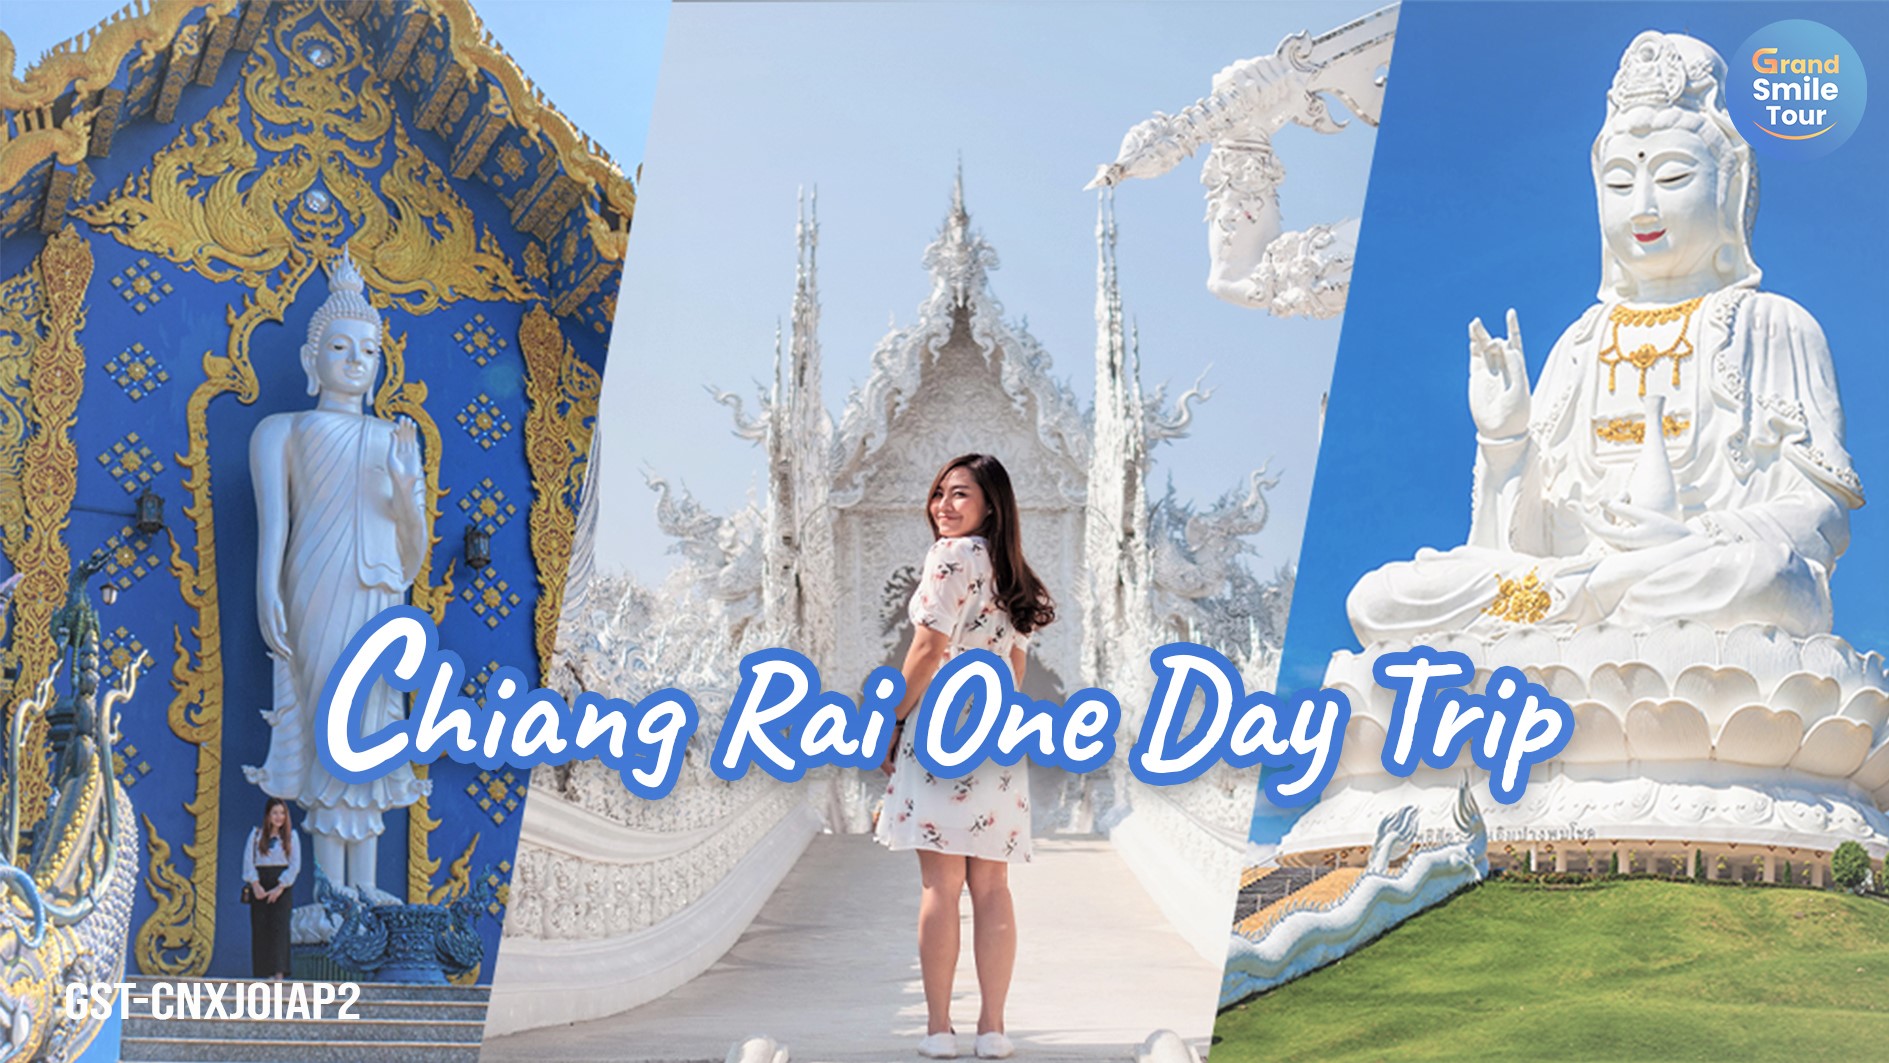 GST-CNXJOIAP2 Chiang Rai One Day Trip